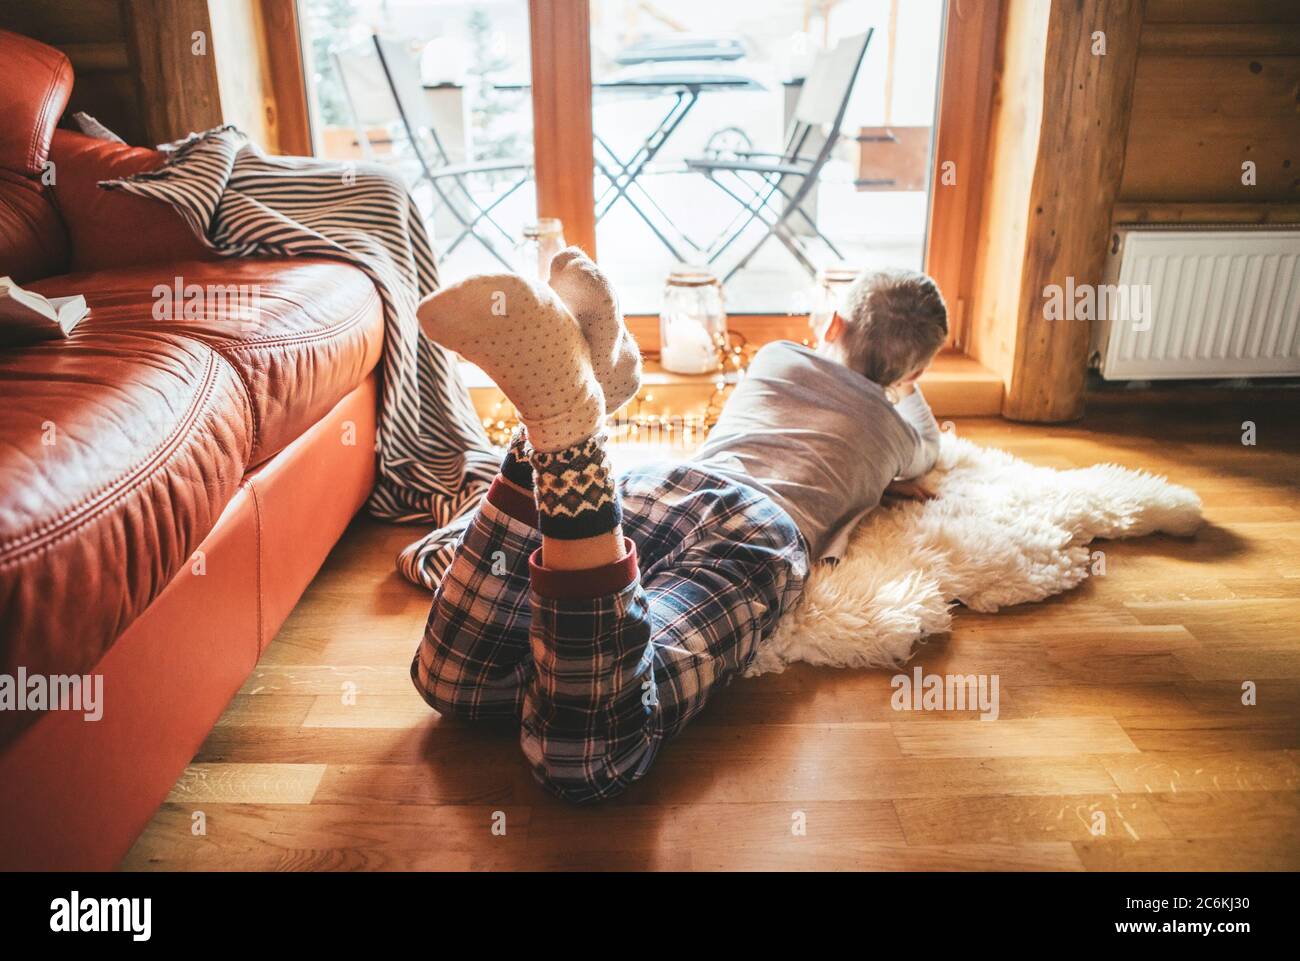 Junge auf dem Boden auf Schaffell liegen und im Fenster schauen, in gemütlichen Hause Pyjama und warme Socken gekleidet Stockfoto